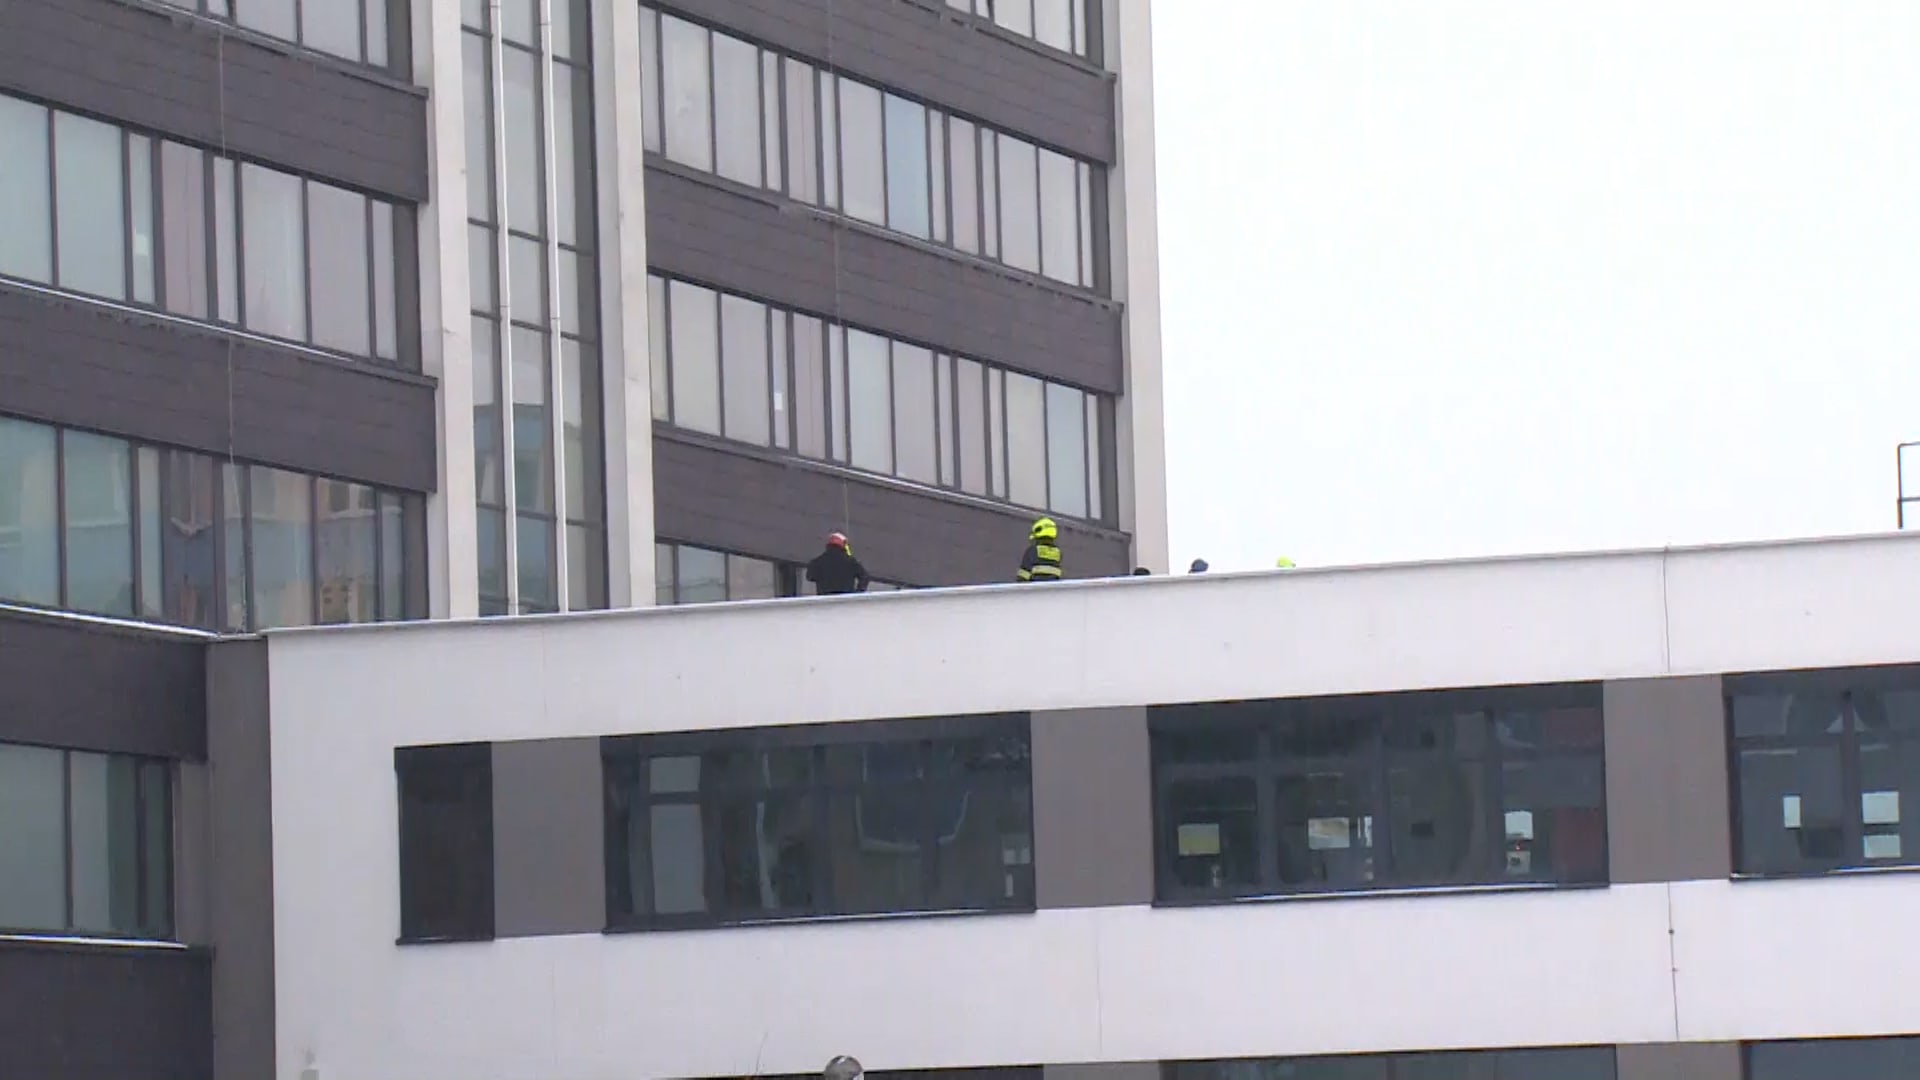 Žena spáchala sebevraždu skokem z okna v budově úřadu práce.